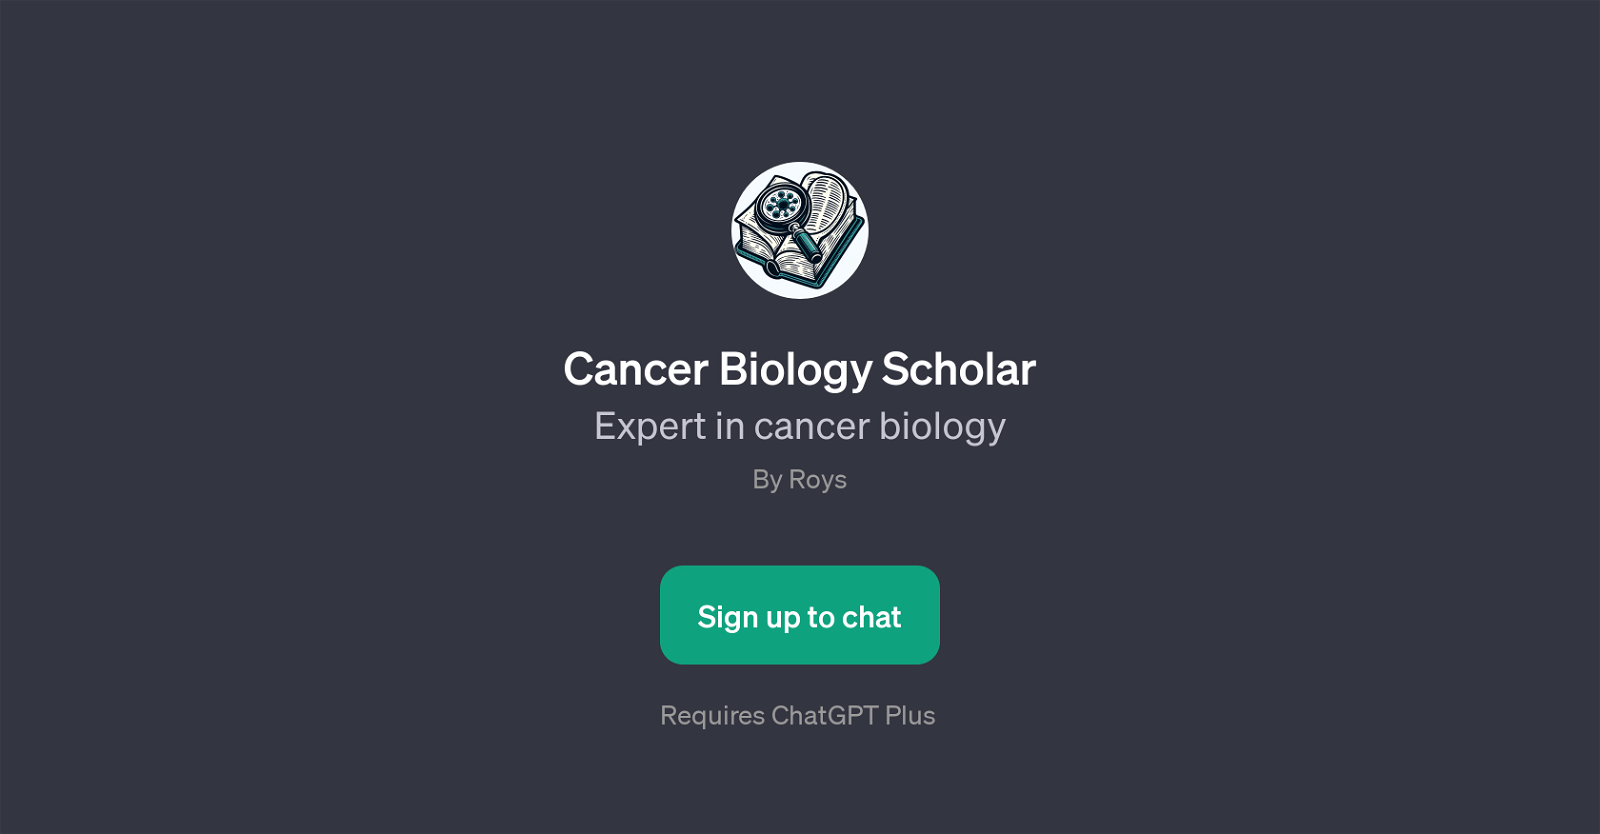 Cancer Biology Scholar website